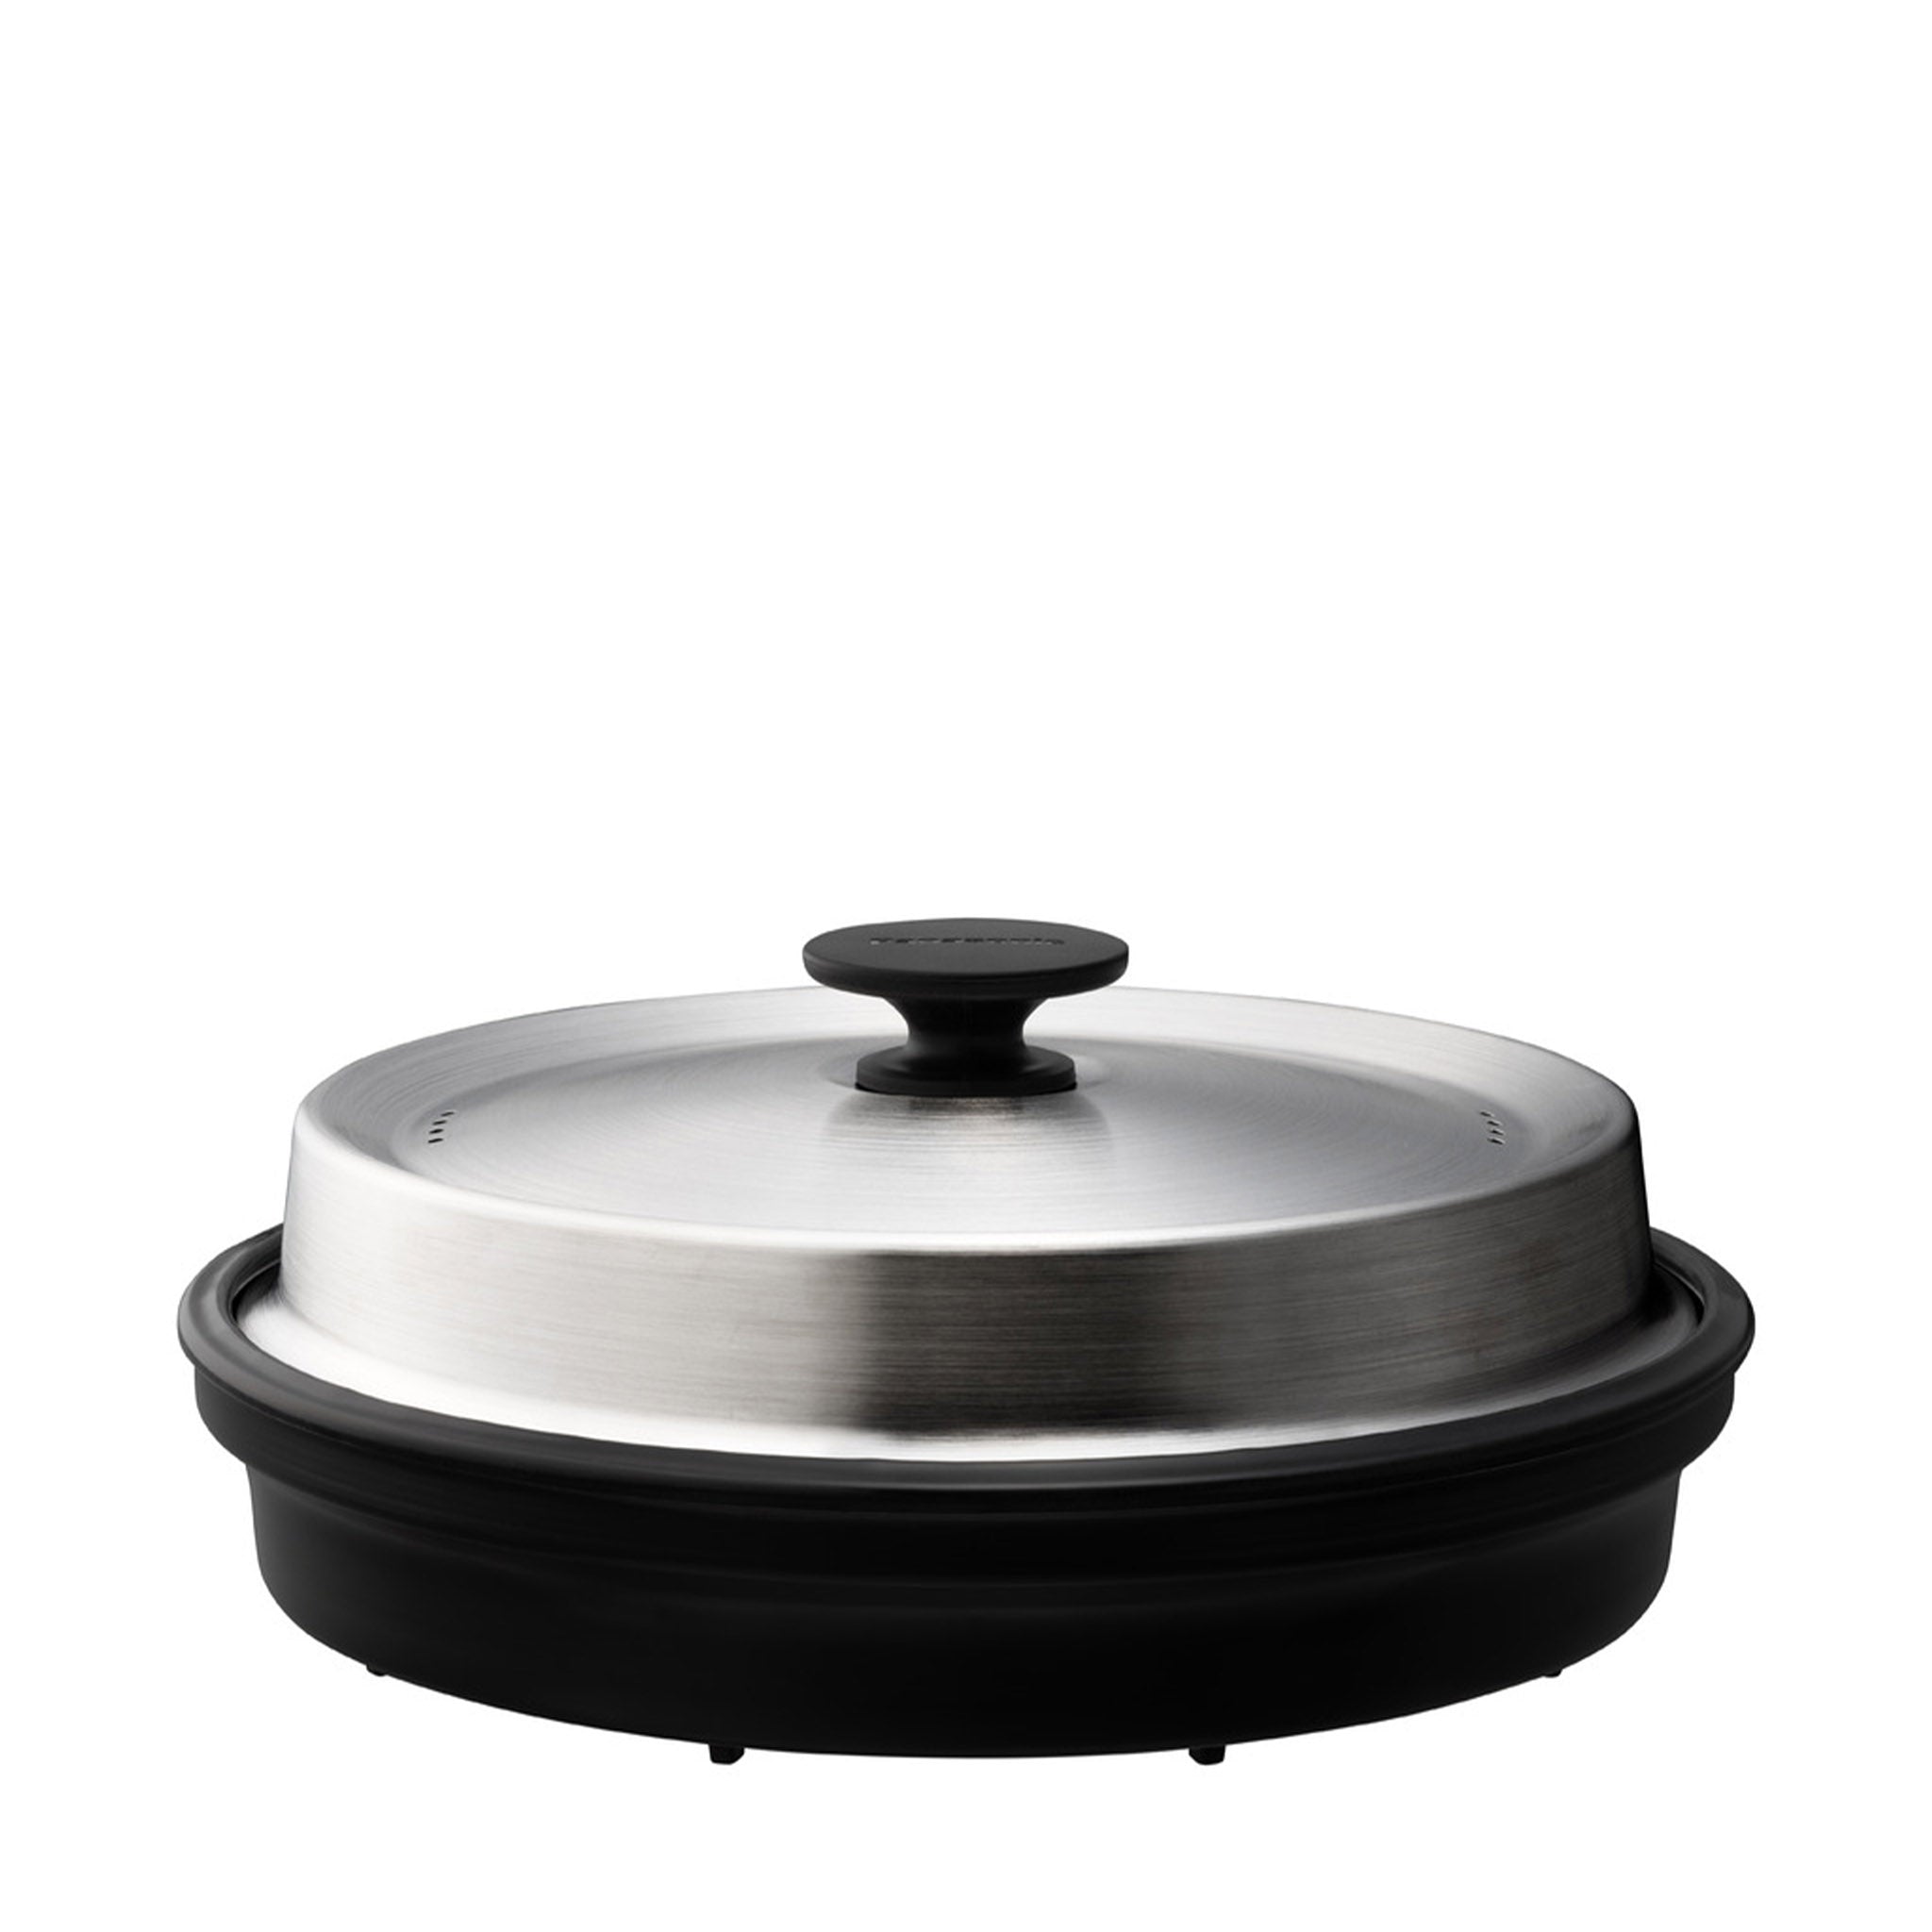 HomeCHEF™ Magic Pot 4-in-1 Cookware Accessory